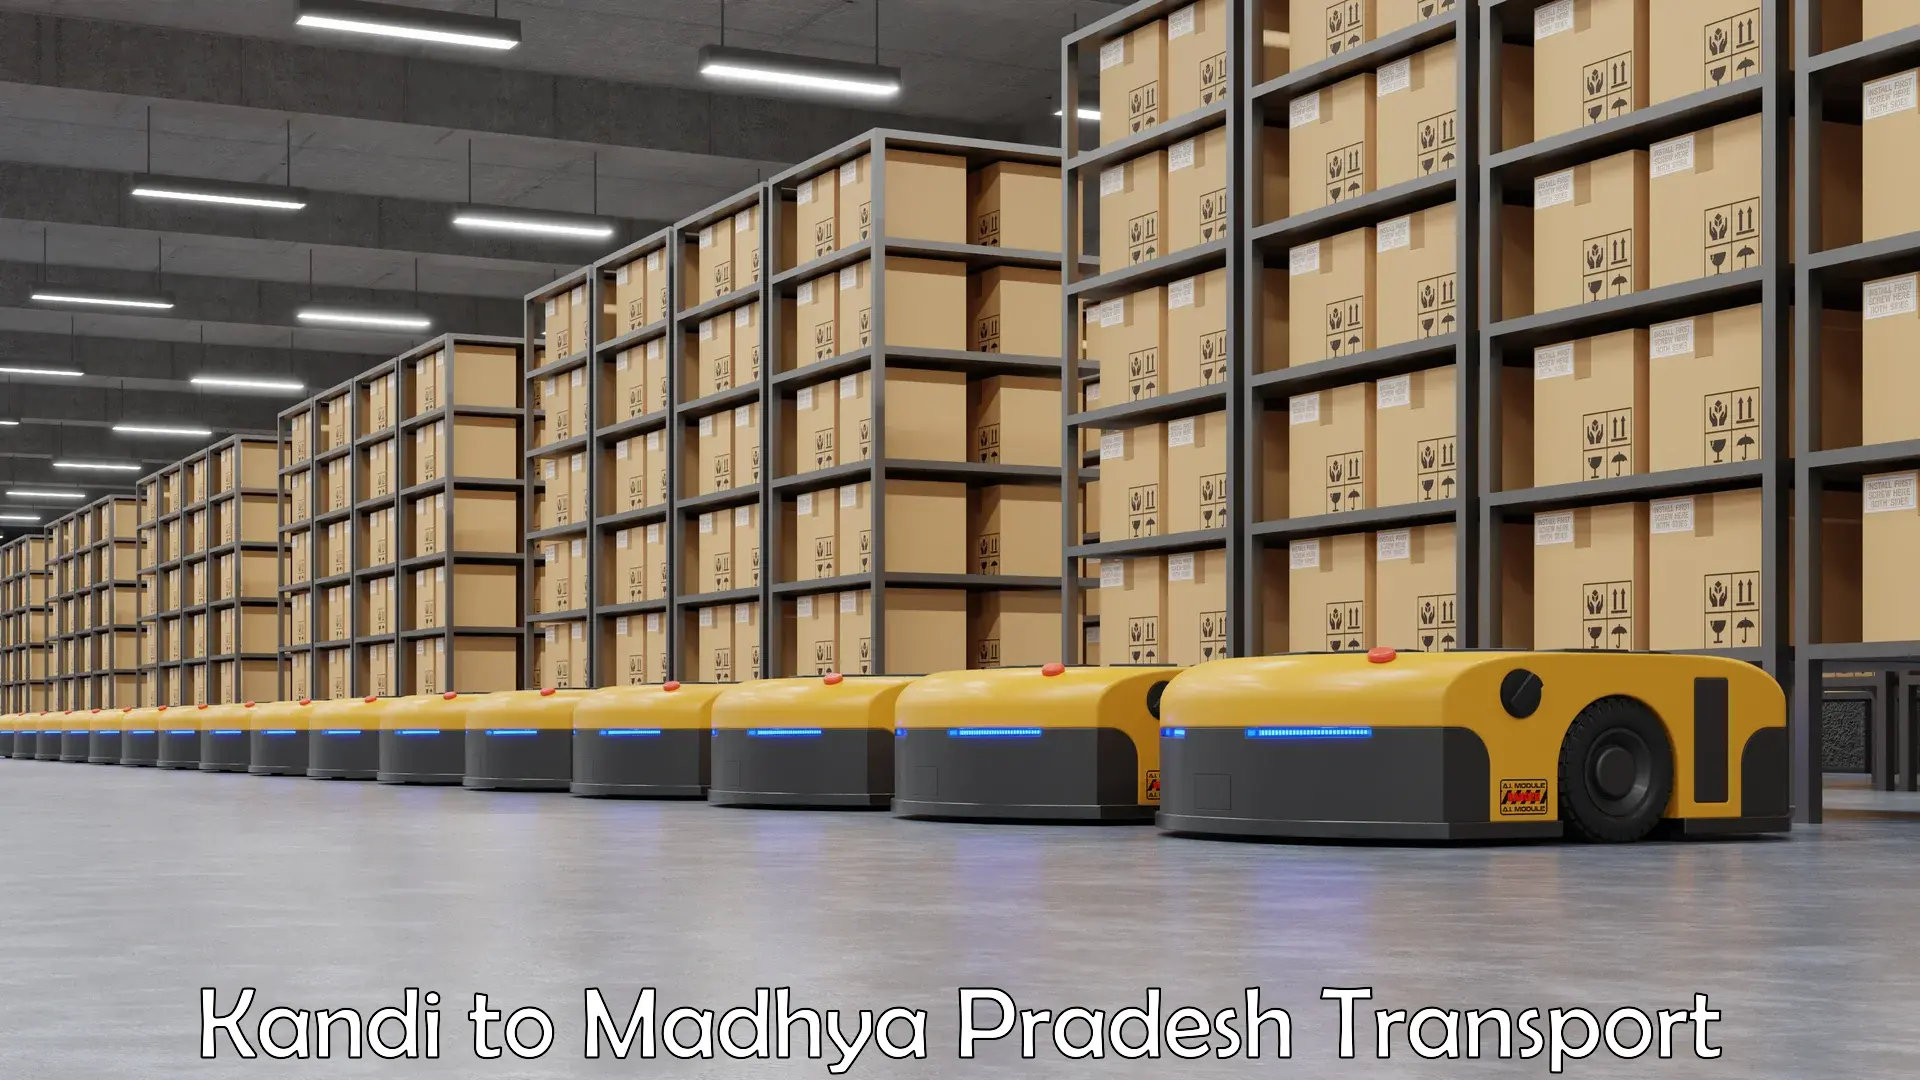 Online transport service Kandi to Madhya Pradesh